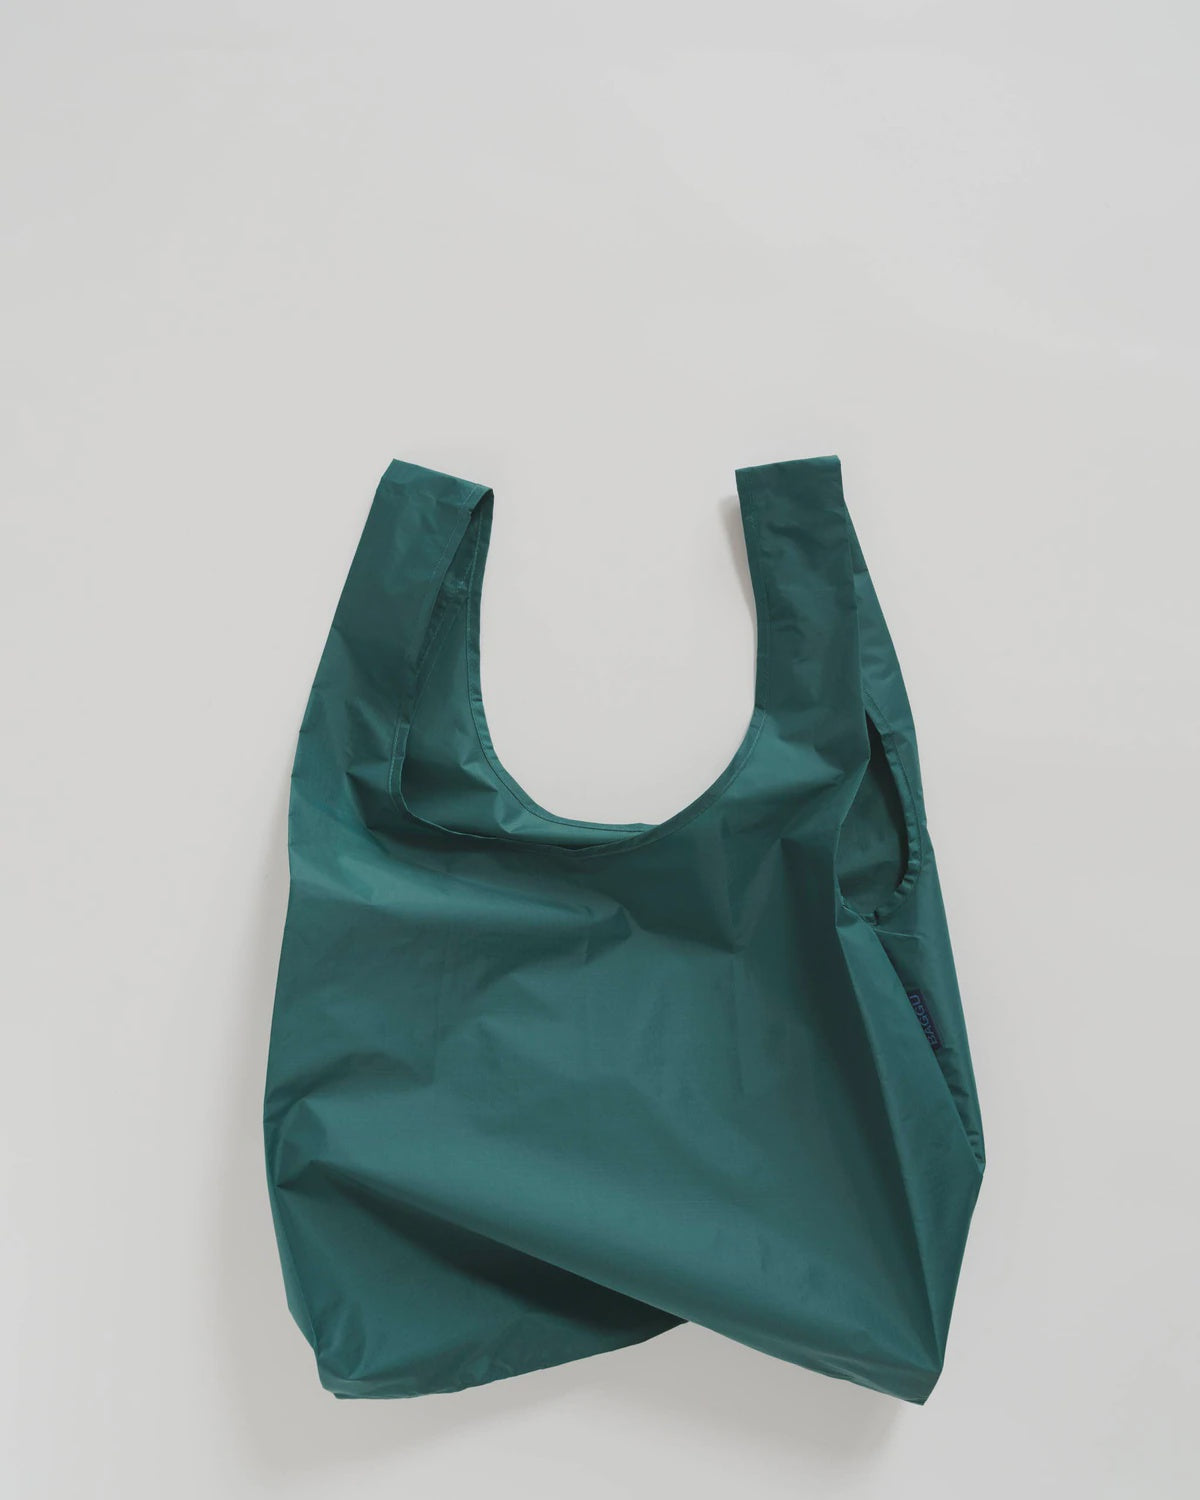 Malachite Standard Reusable Bag by Baggu